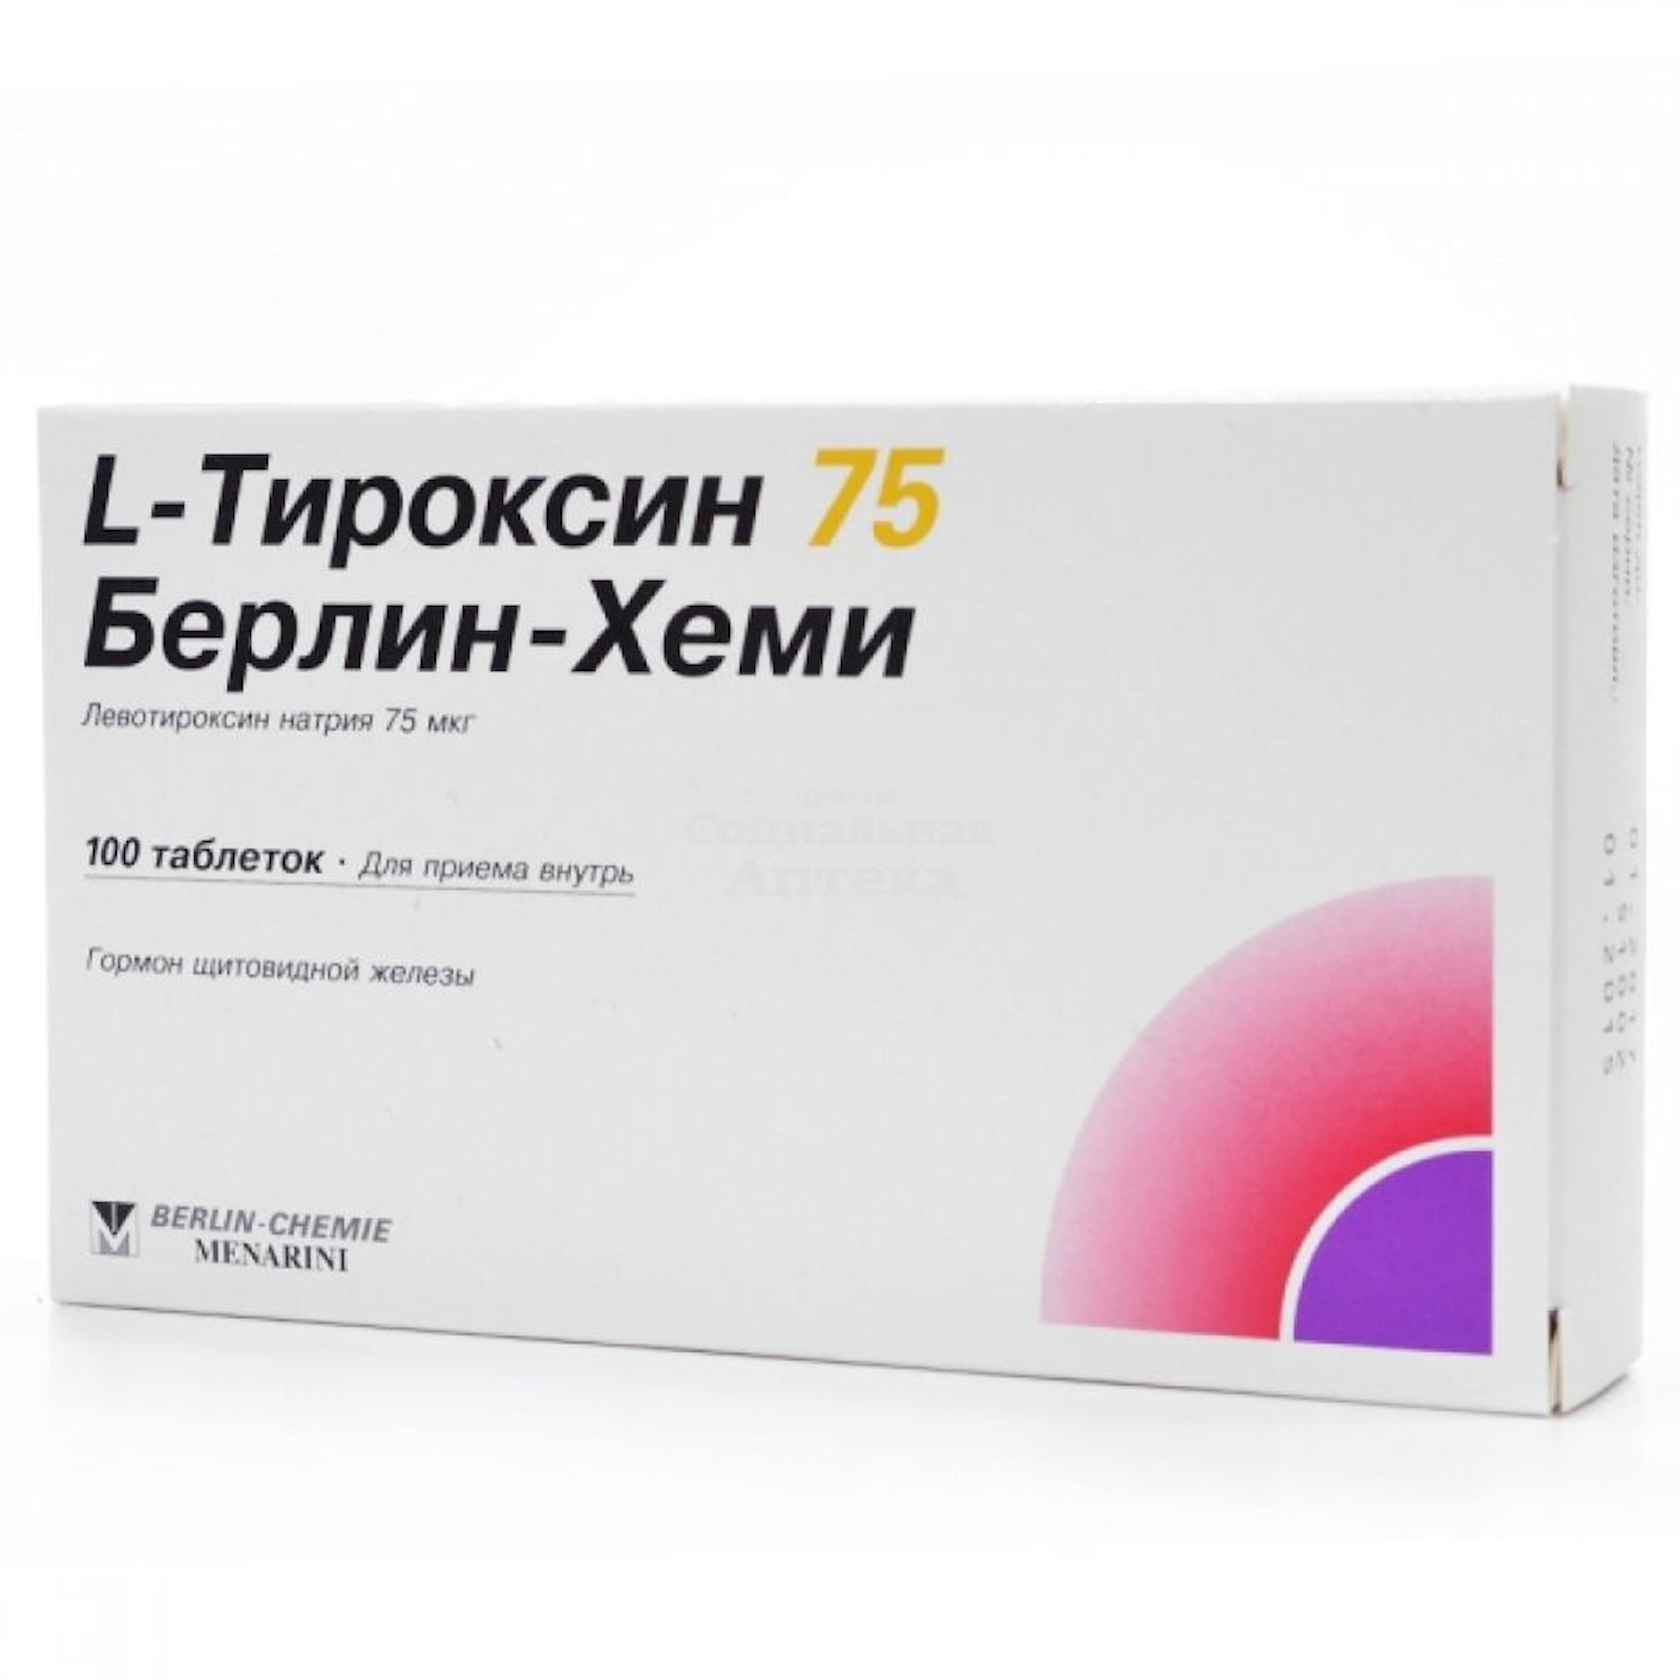 L-Тироксин 75 Берлин Хеми таблетки 75 мкг, 100 шт - купить в Баку. Цена,  обзор, отзывы, продажа